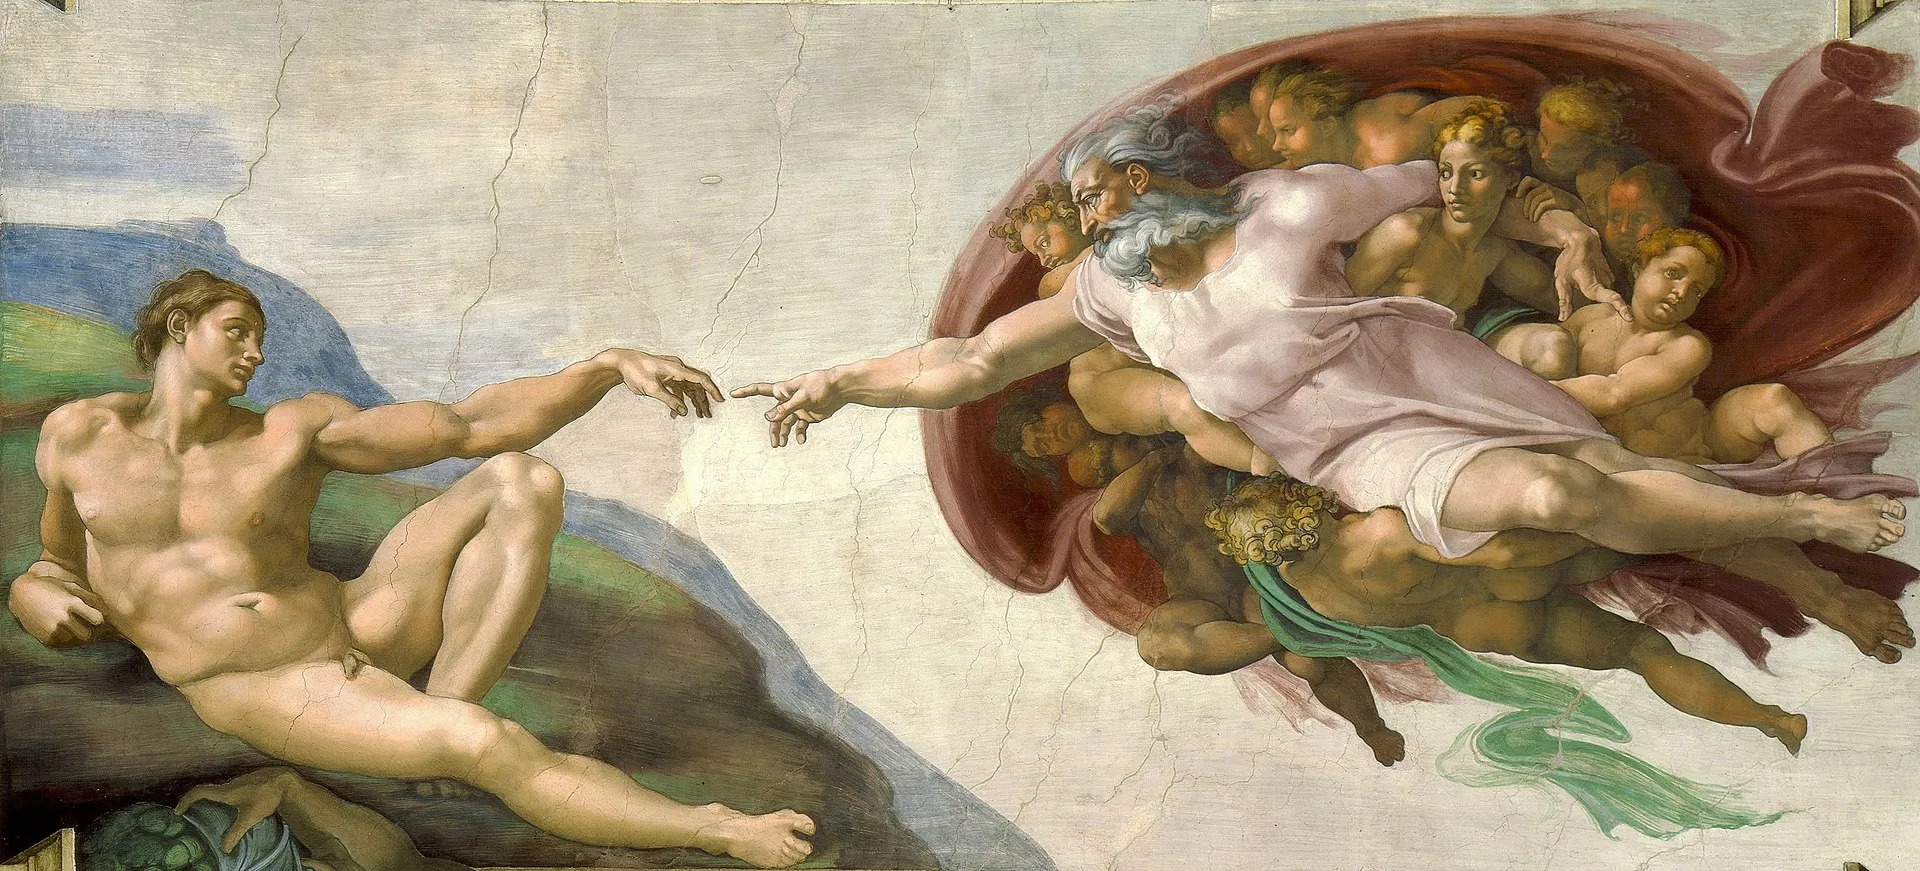 'La creació d'Adam', de Miquel Àngel es pot veure a la Capella Sixtina del Vaticà